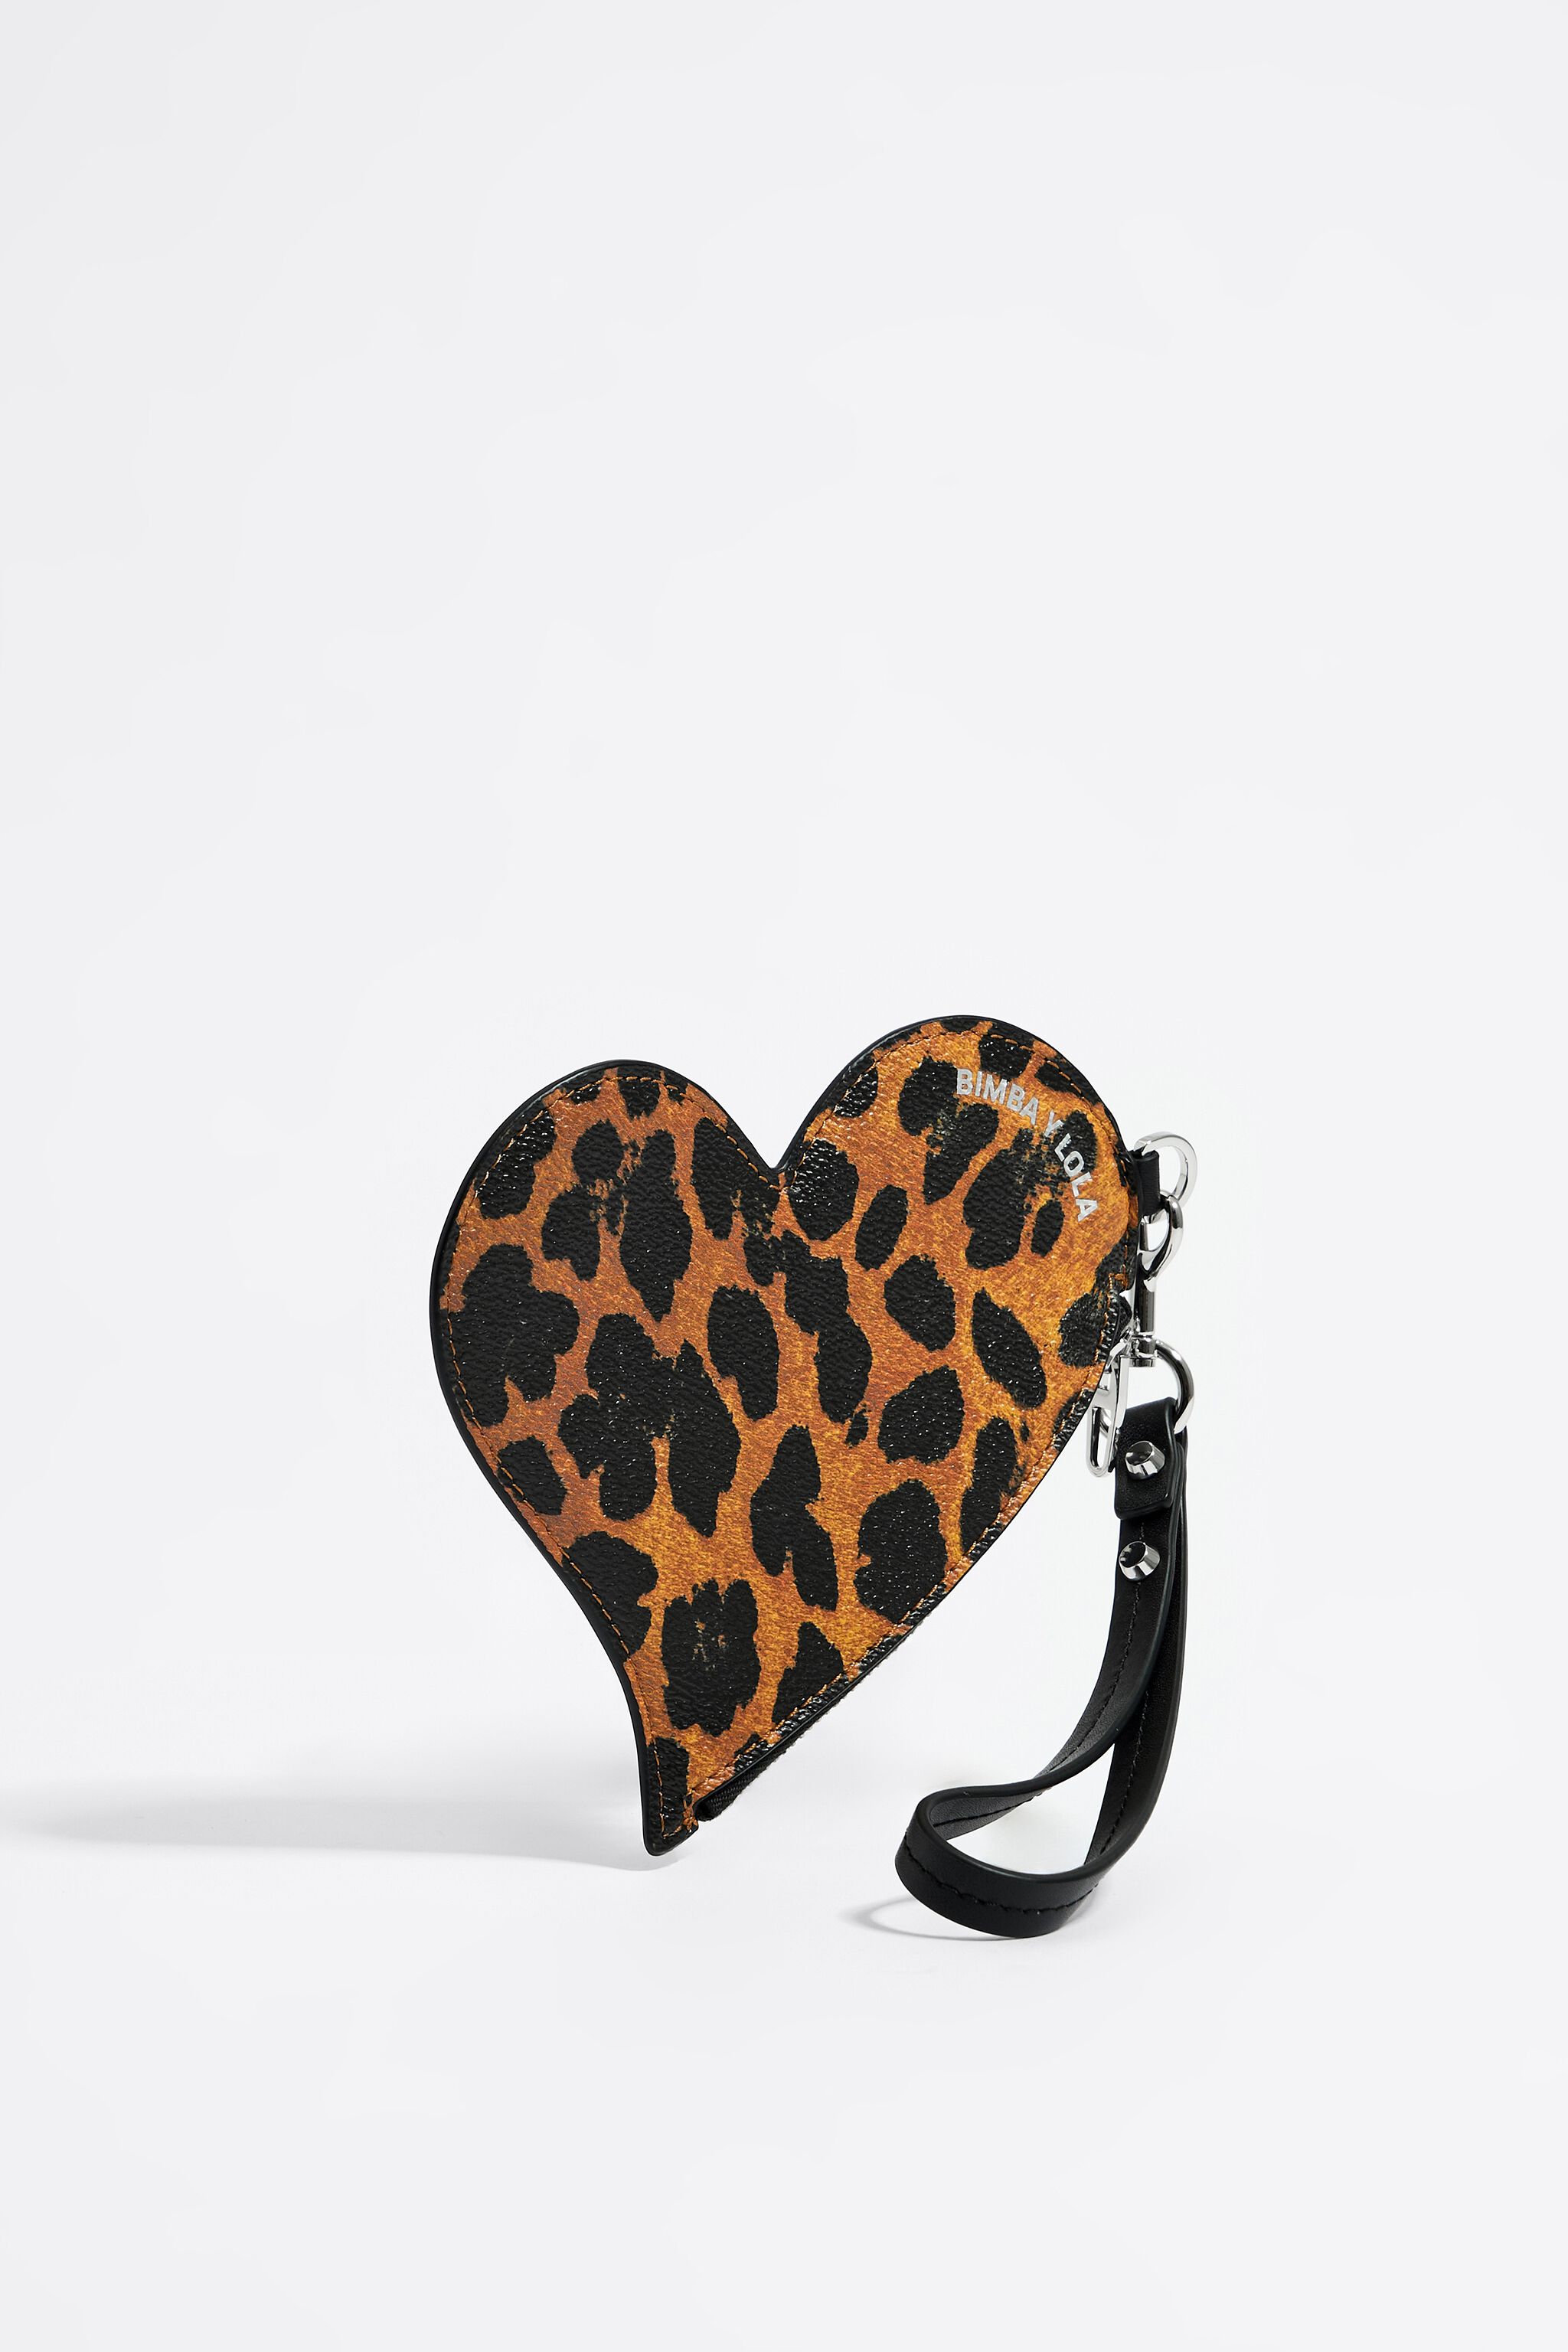 Buy 3 pcs Handbag Set for Women Leopard Print Tote Large Shoulder Bag  Concealed Carry Purse, Black at Amazon.in